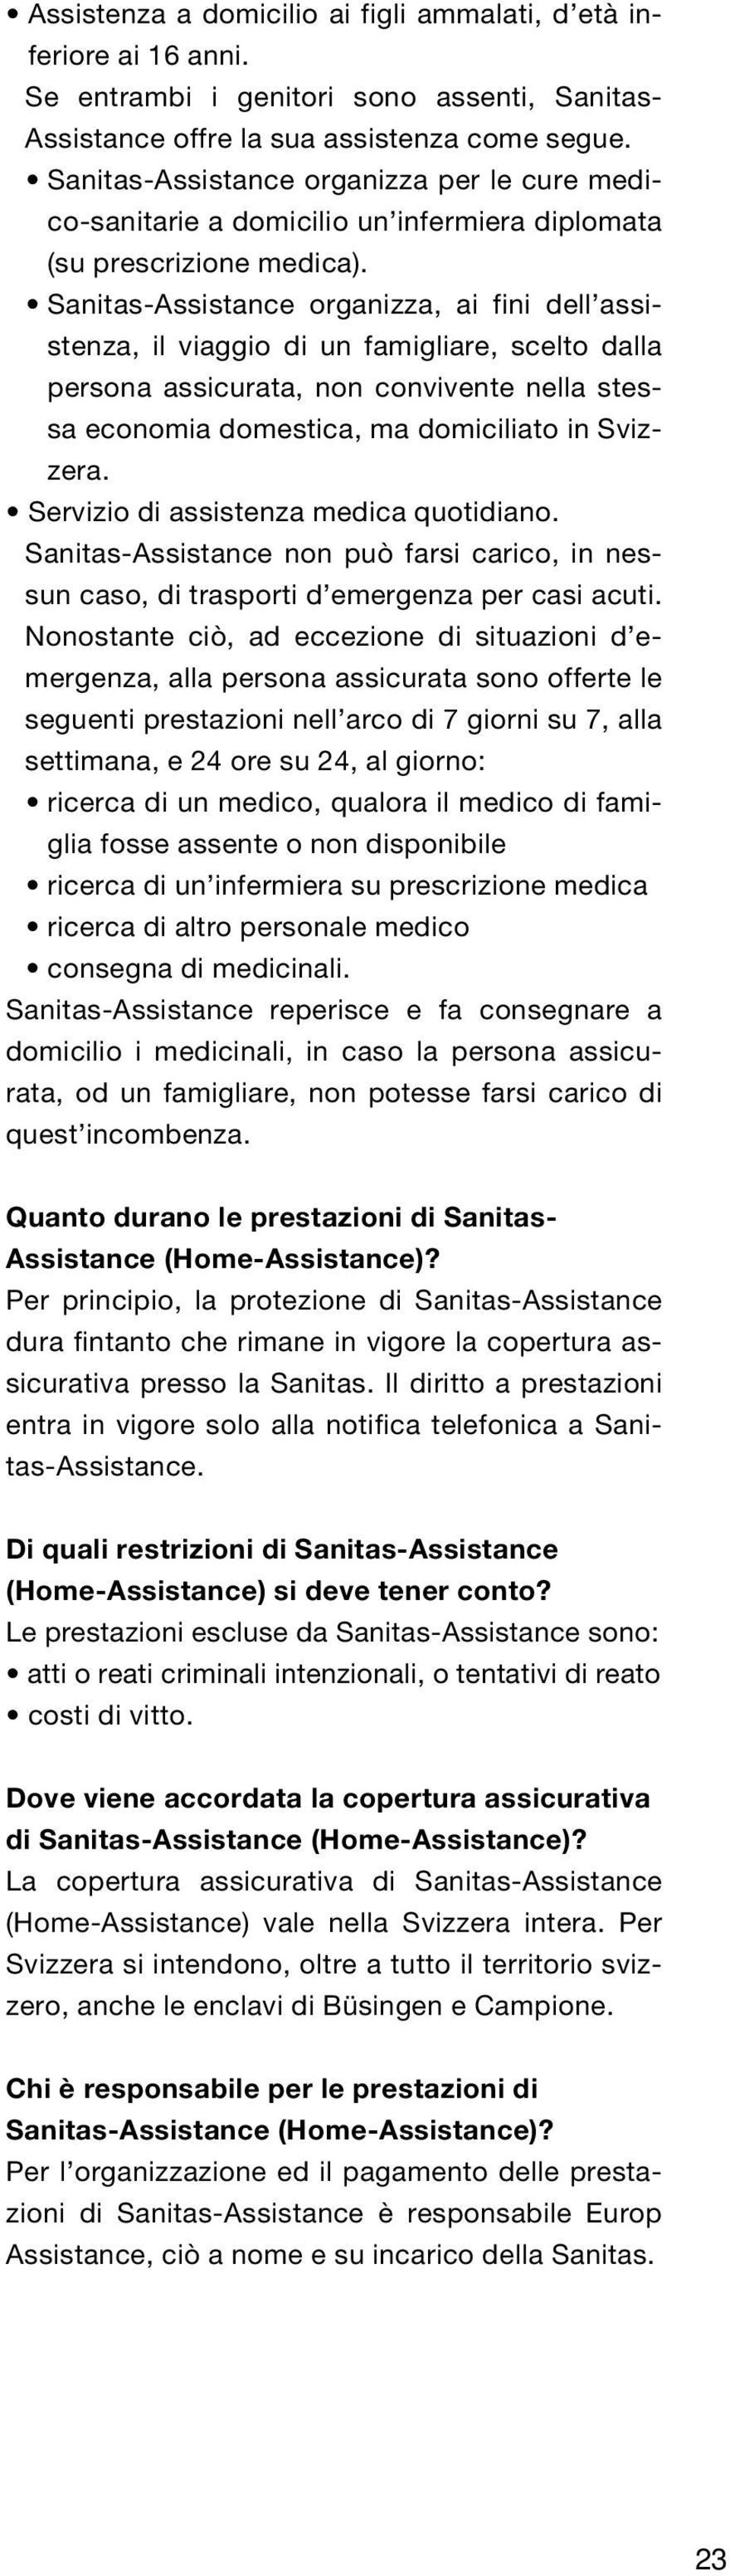 Sanitas-Assistance organizza, ai fini dell assistenza, il viaggio di un famigliare, scelto dalla persona assicurata, non convivente nella stessa economia domestica, ma domiciliato in Svizzera.